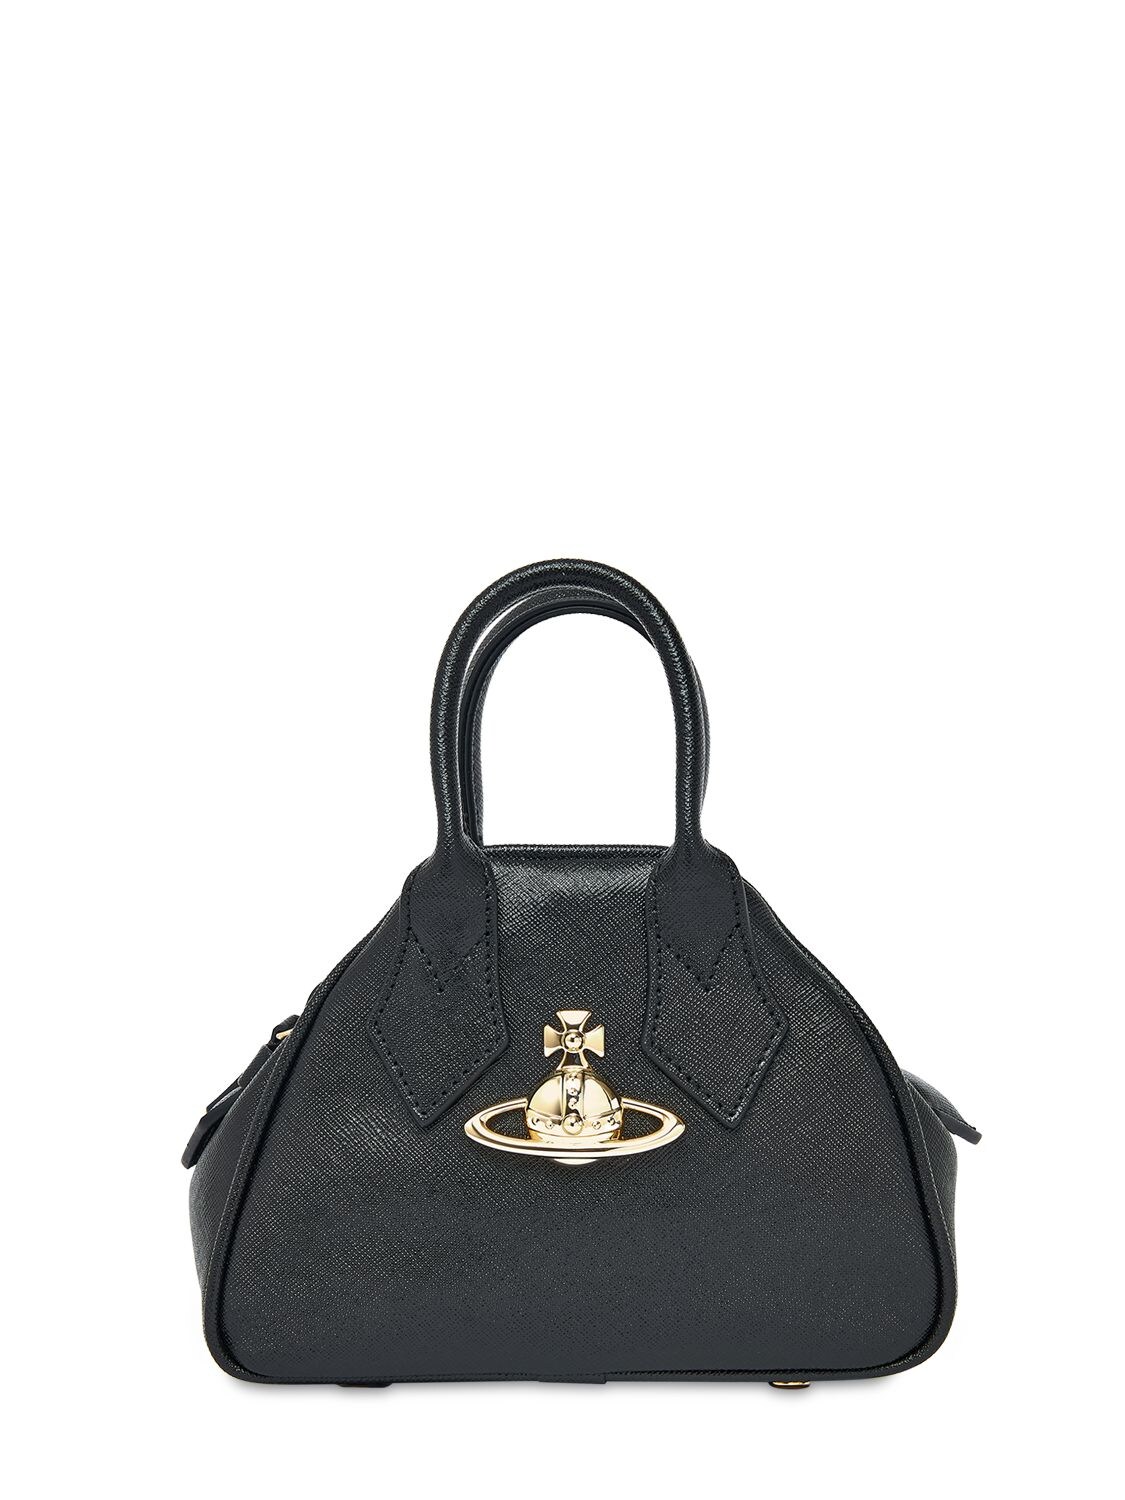 Vivienne Westwood Mini Yasmine Leather Top Handle Bag In Black